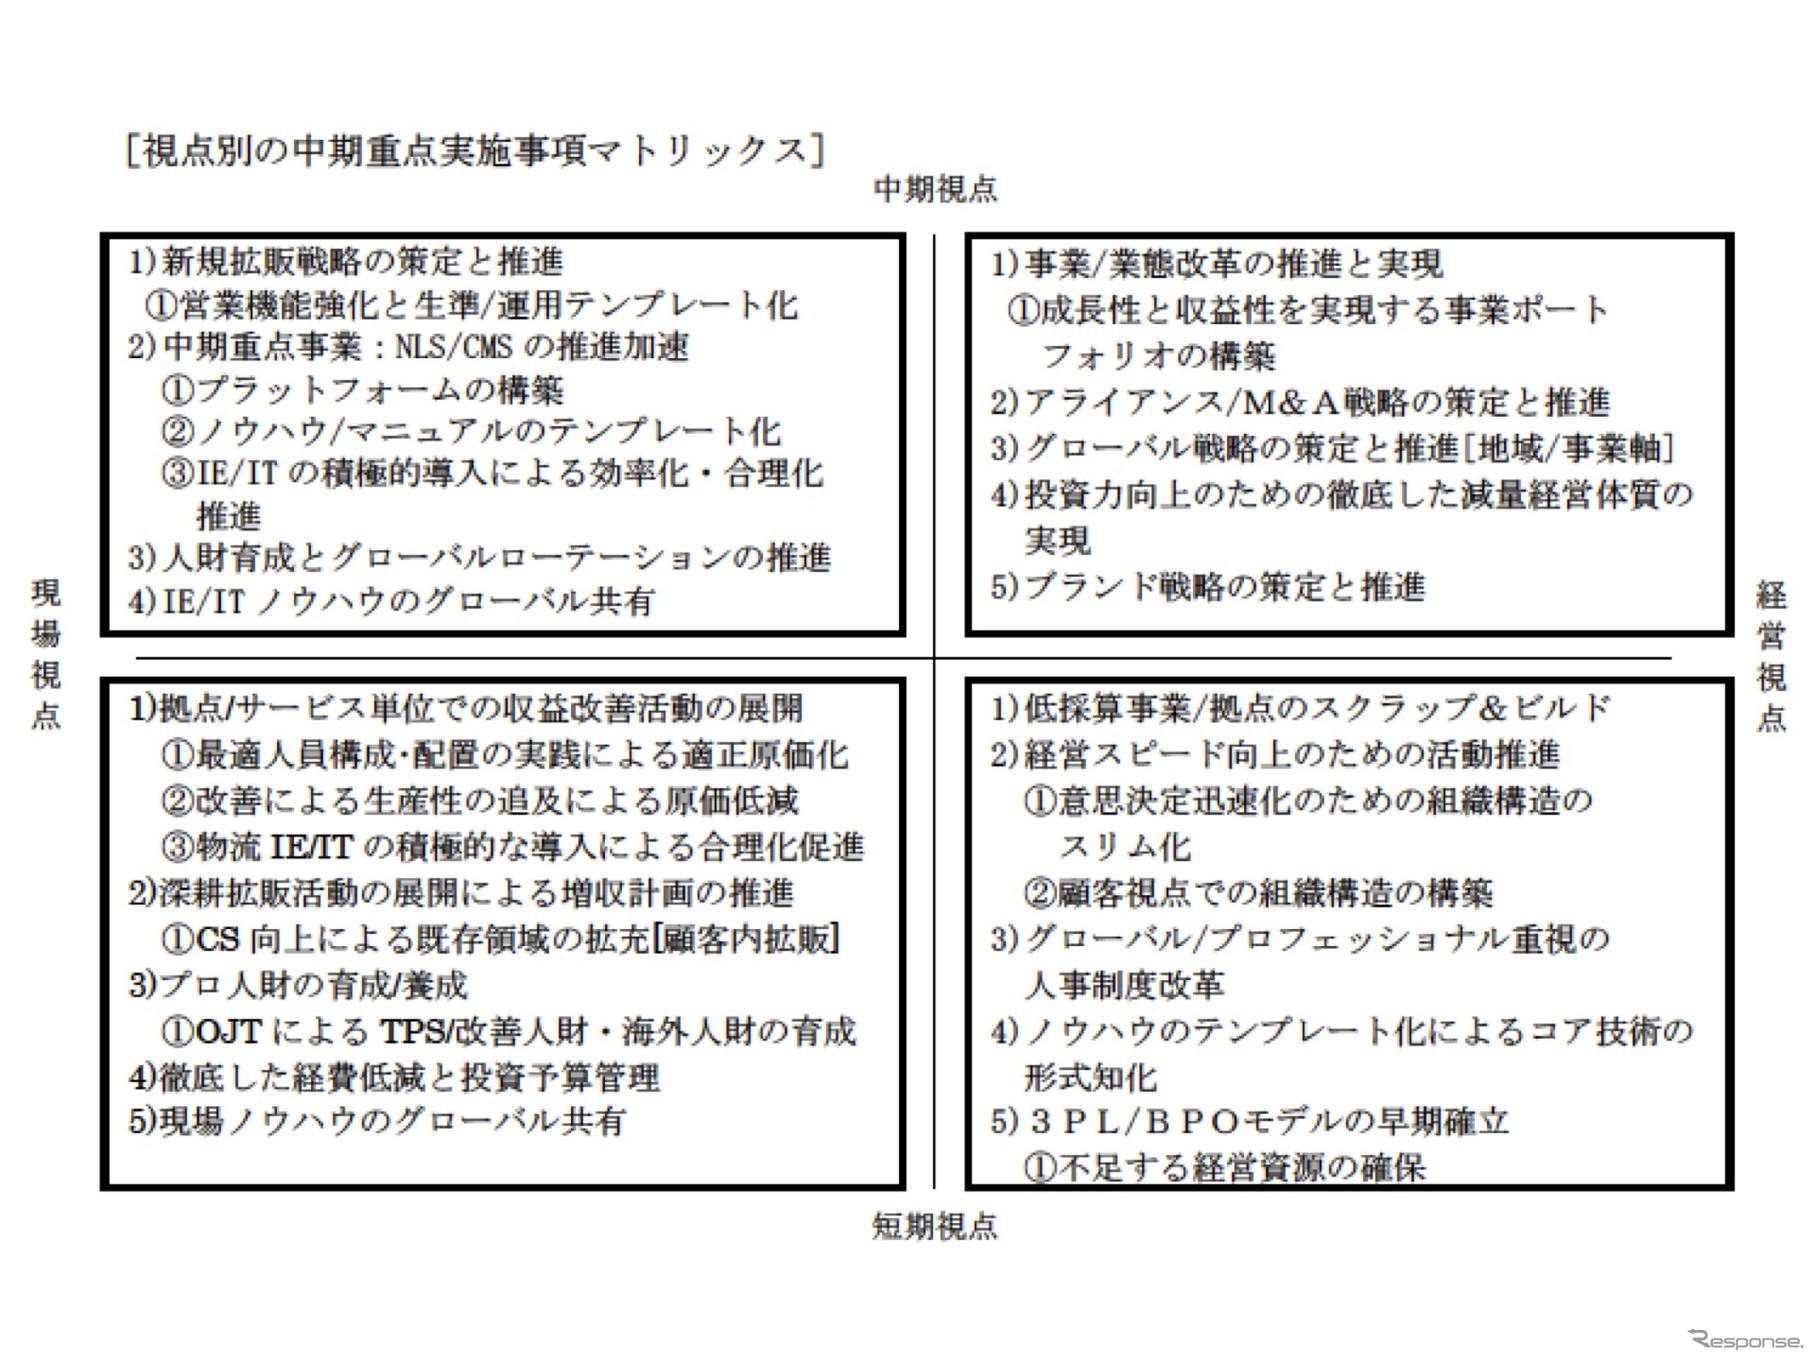 キムラユニティー「中期経営計画2014」